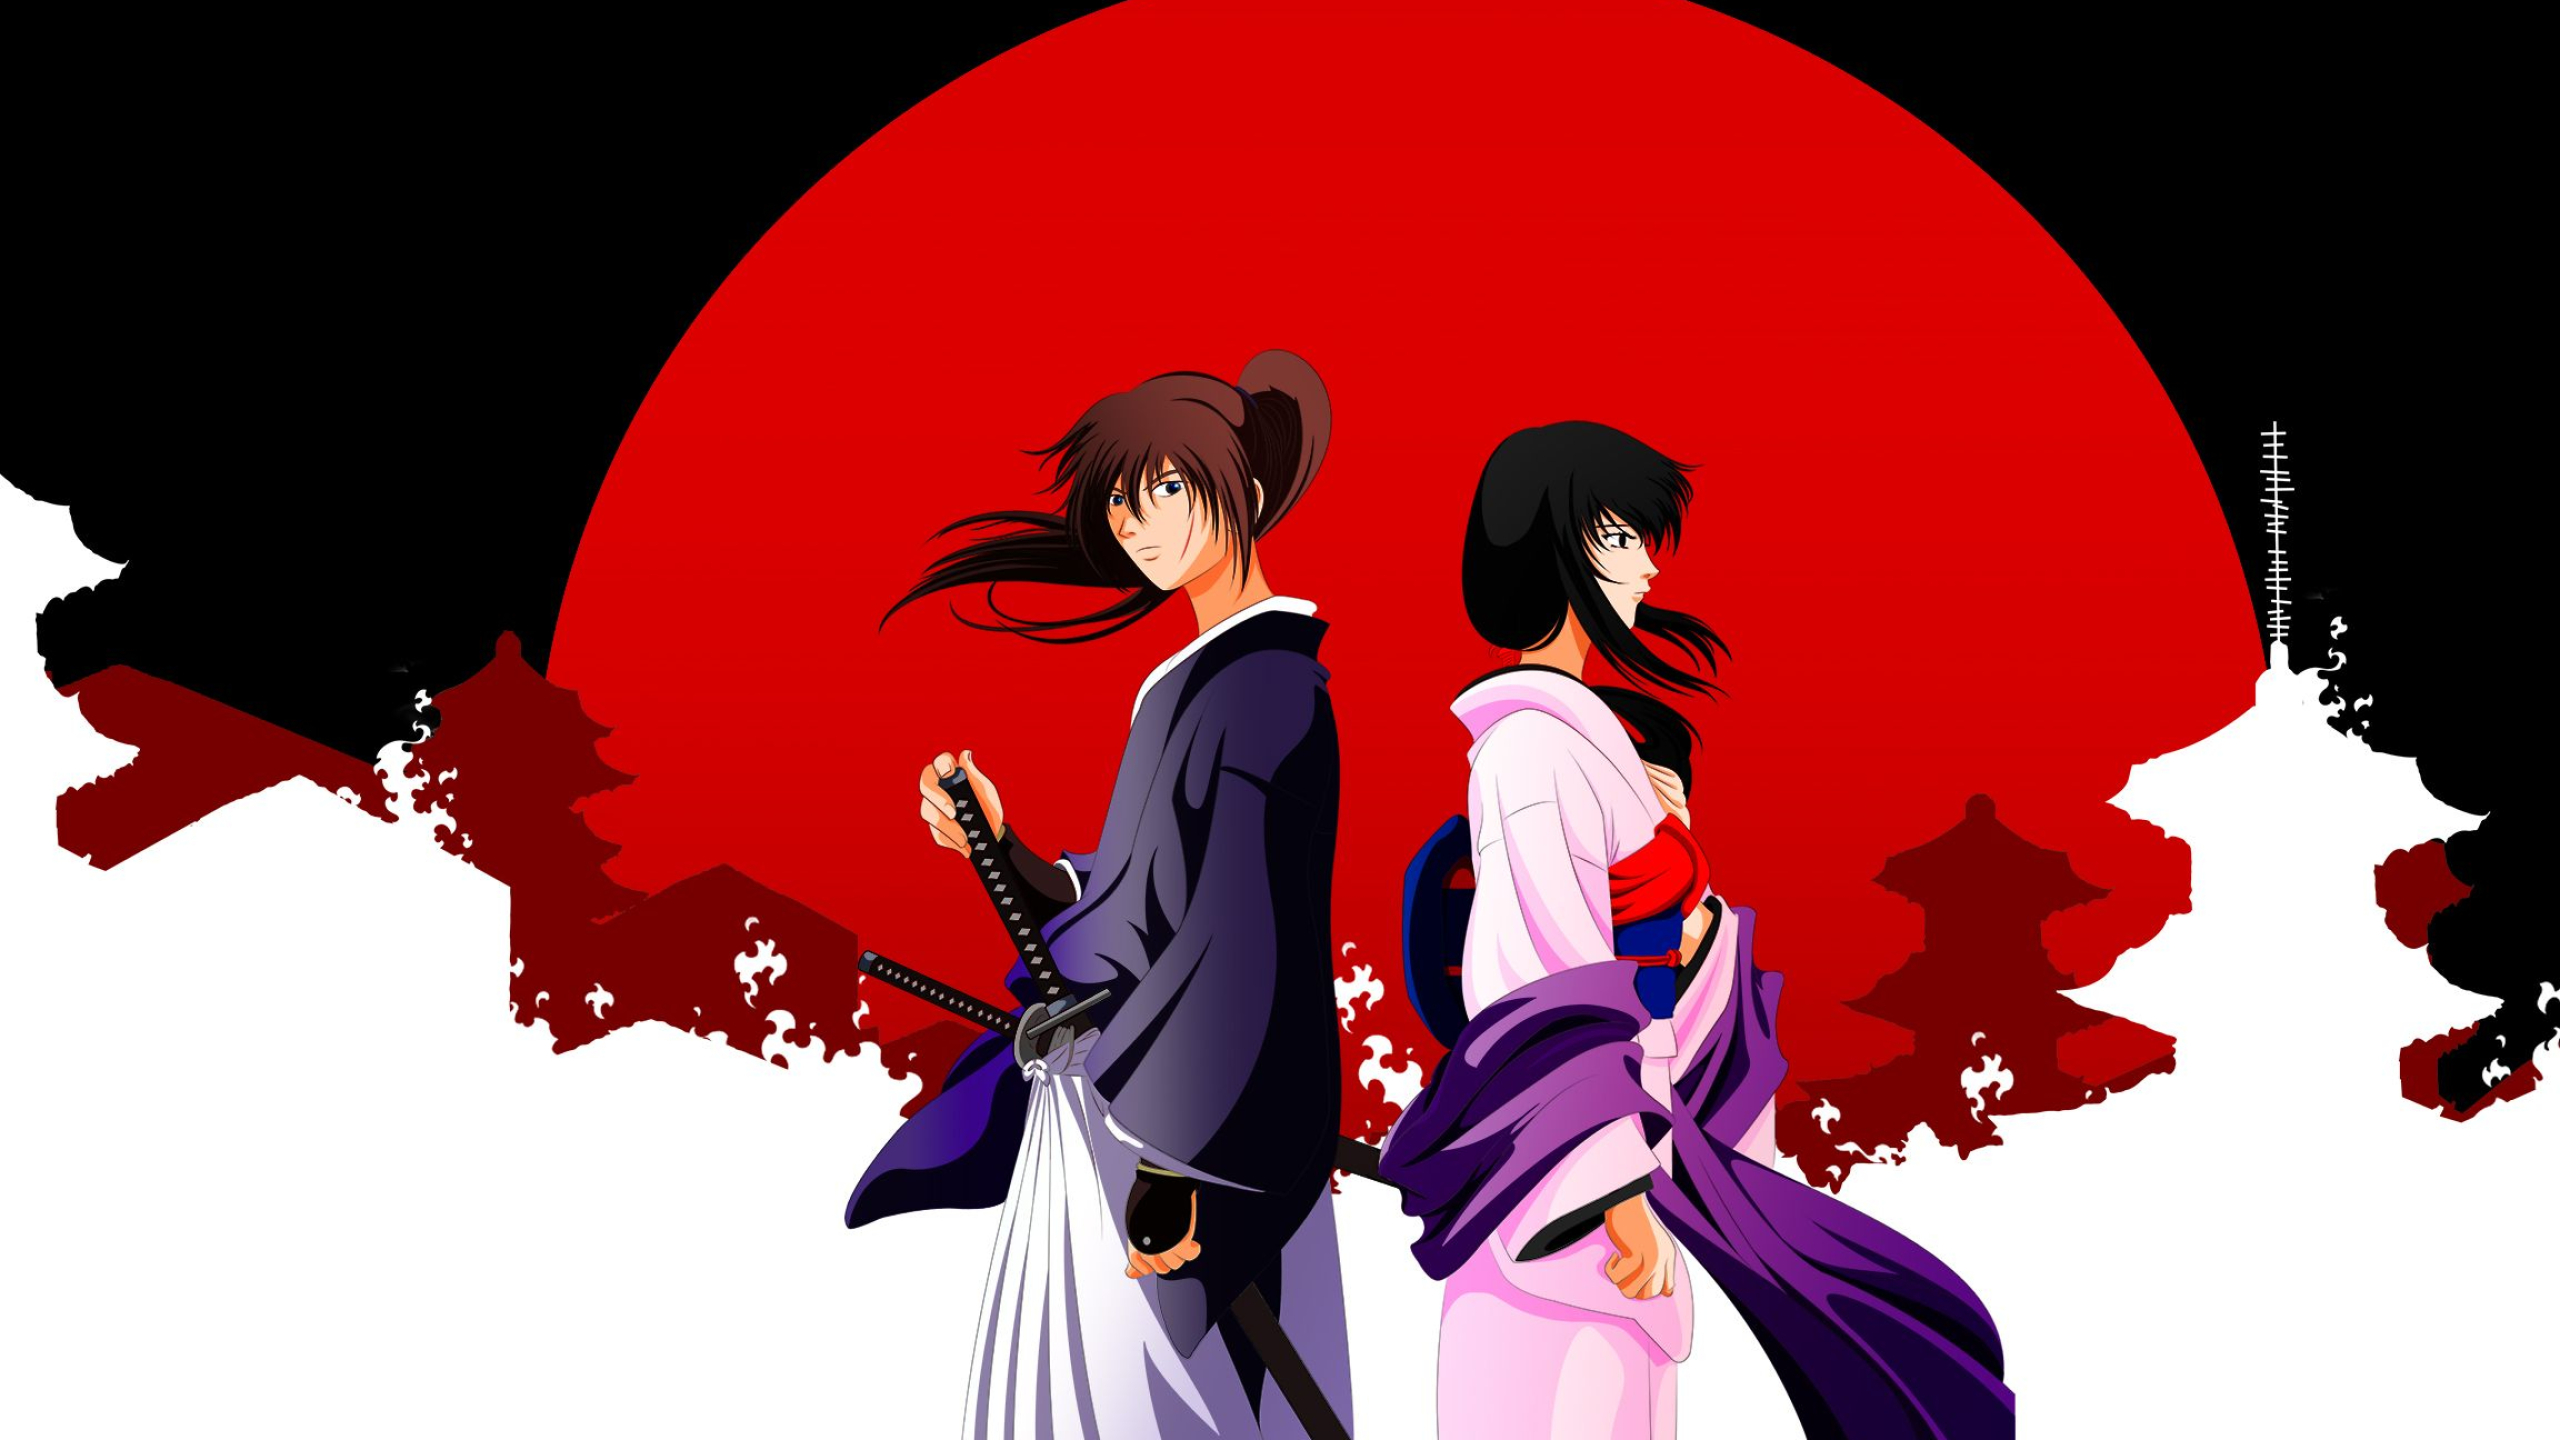 2560x1440 Download Rurouni Kenshin Wallpaper: In Memories () | Rurouni kenshin, Anime, Kenshin anime